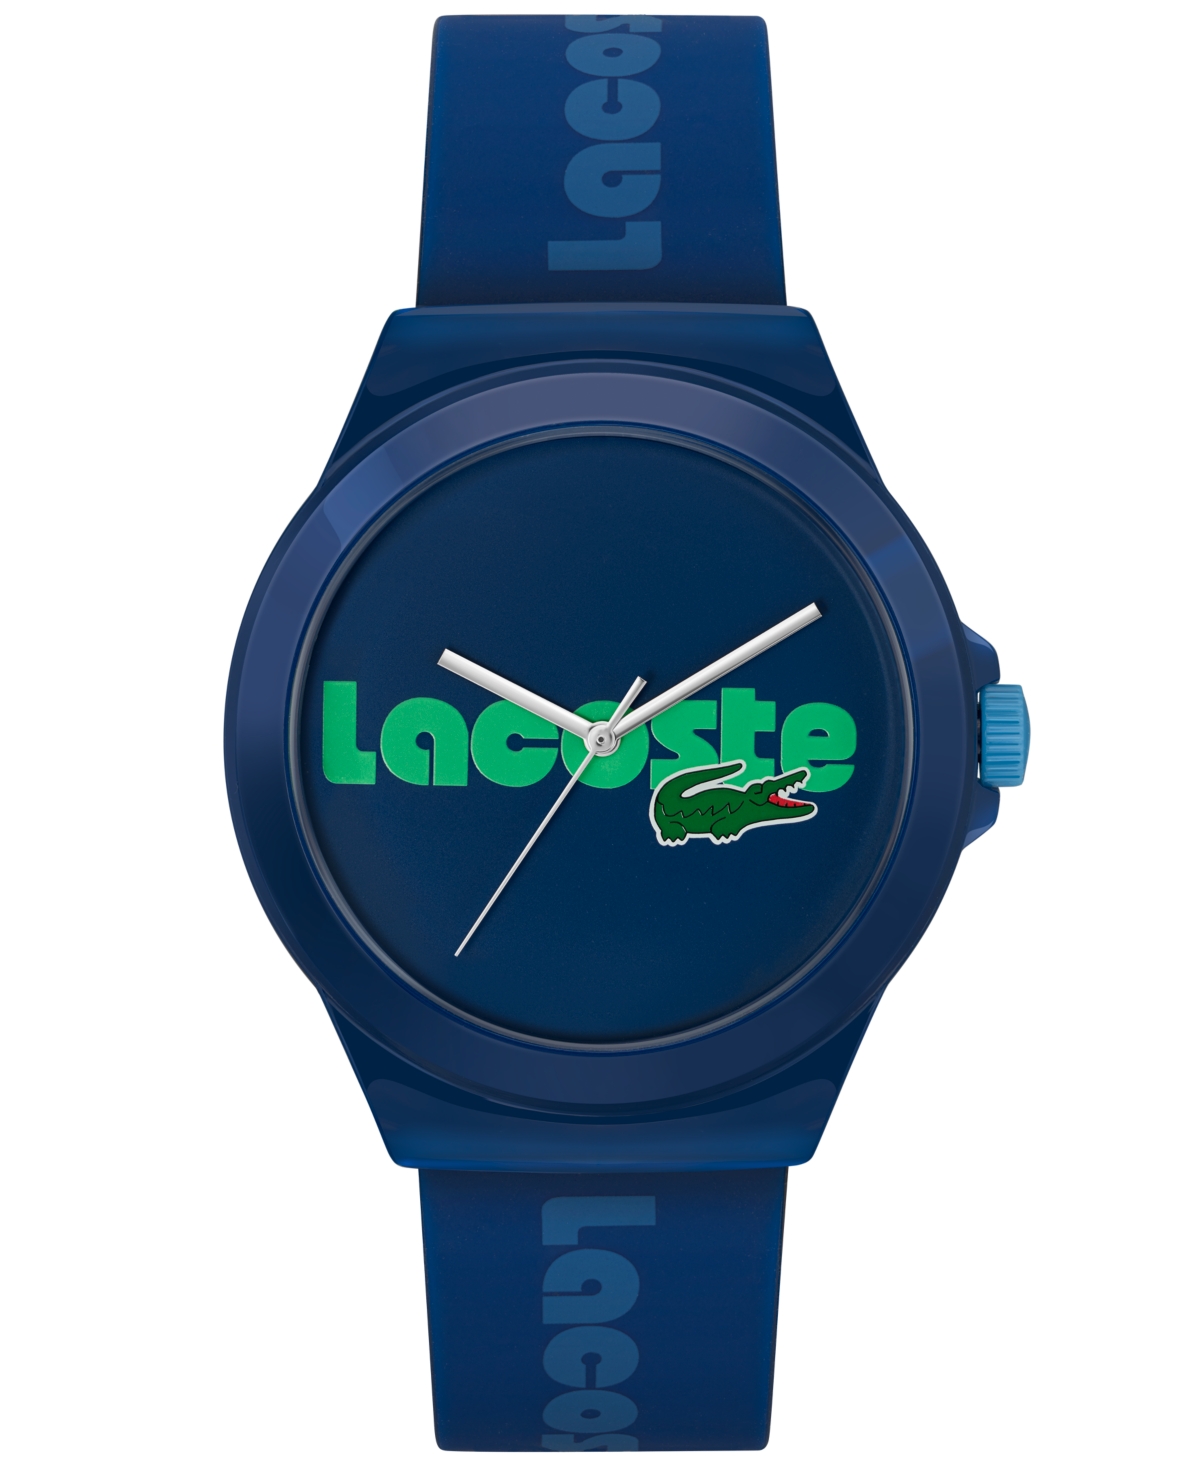 Men's Neocroc Quartz Blue Silicone Strap Watch 42mm - Blue